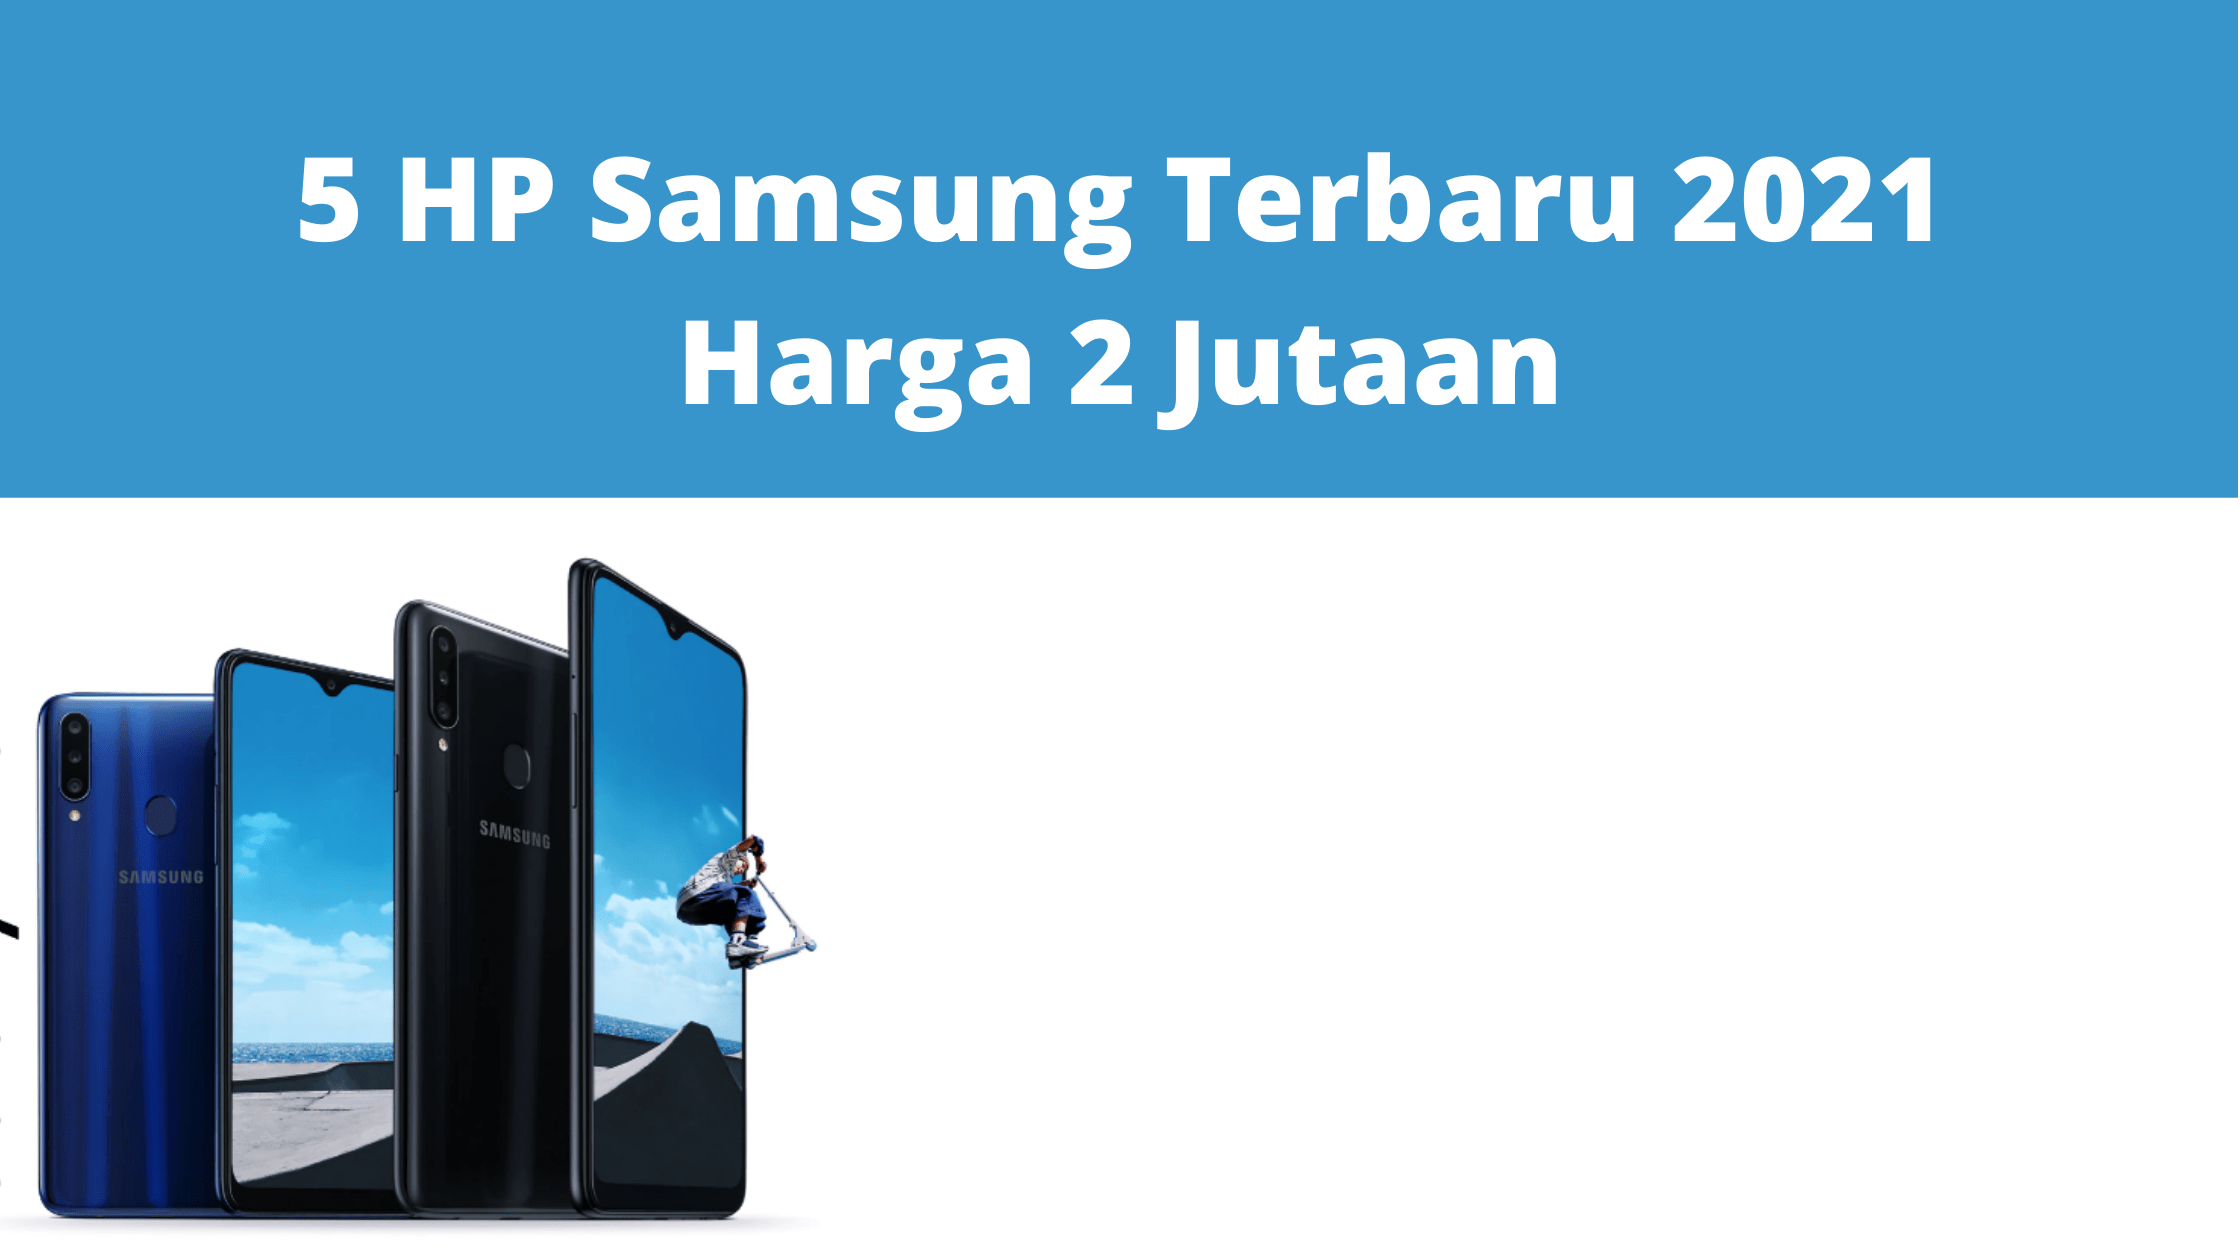 5 HP Samsung Terbaru 2021 Harga 2 Jutaan